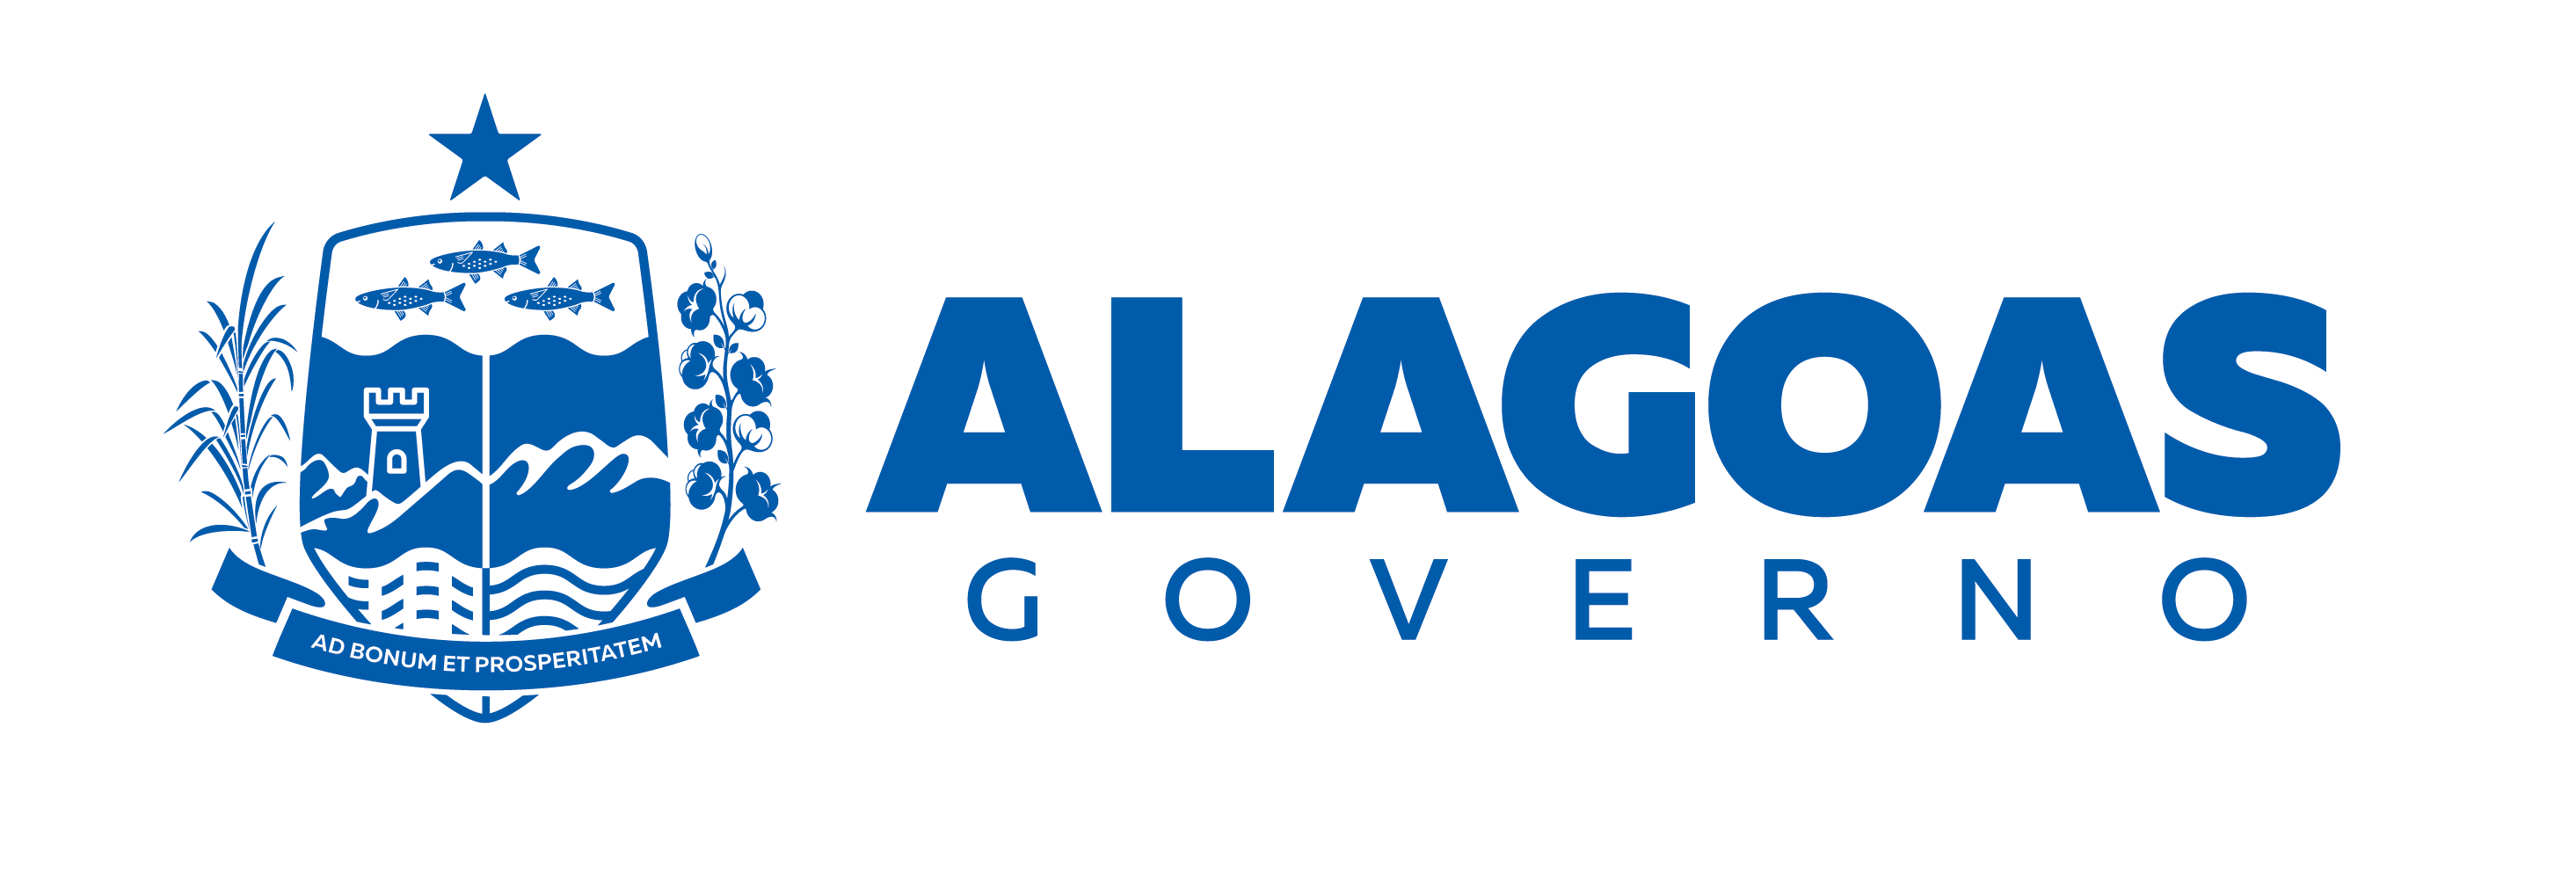 imagem do Brasão do governo de Alagoas